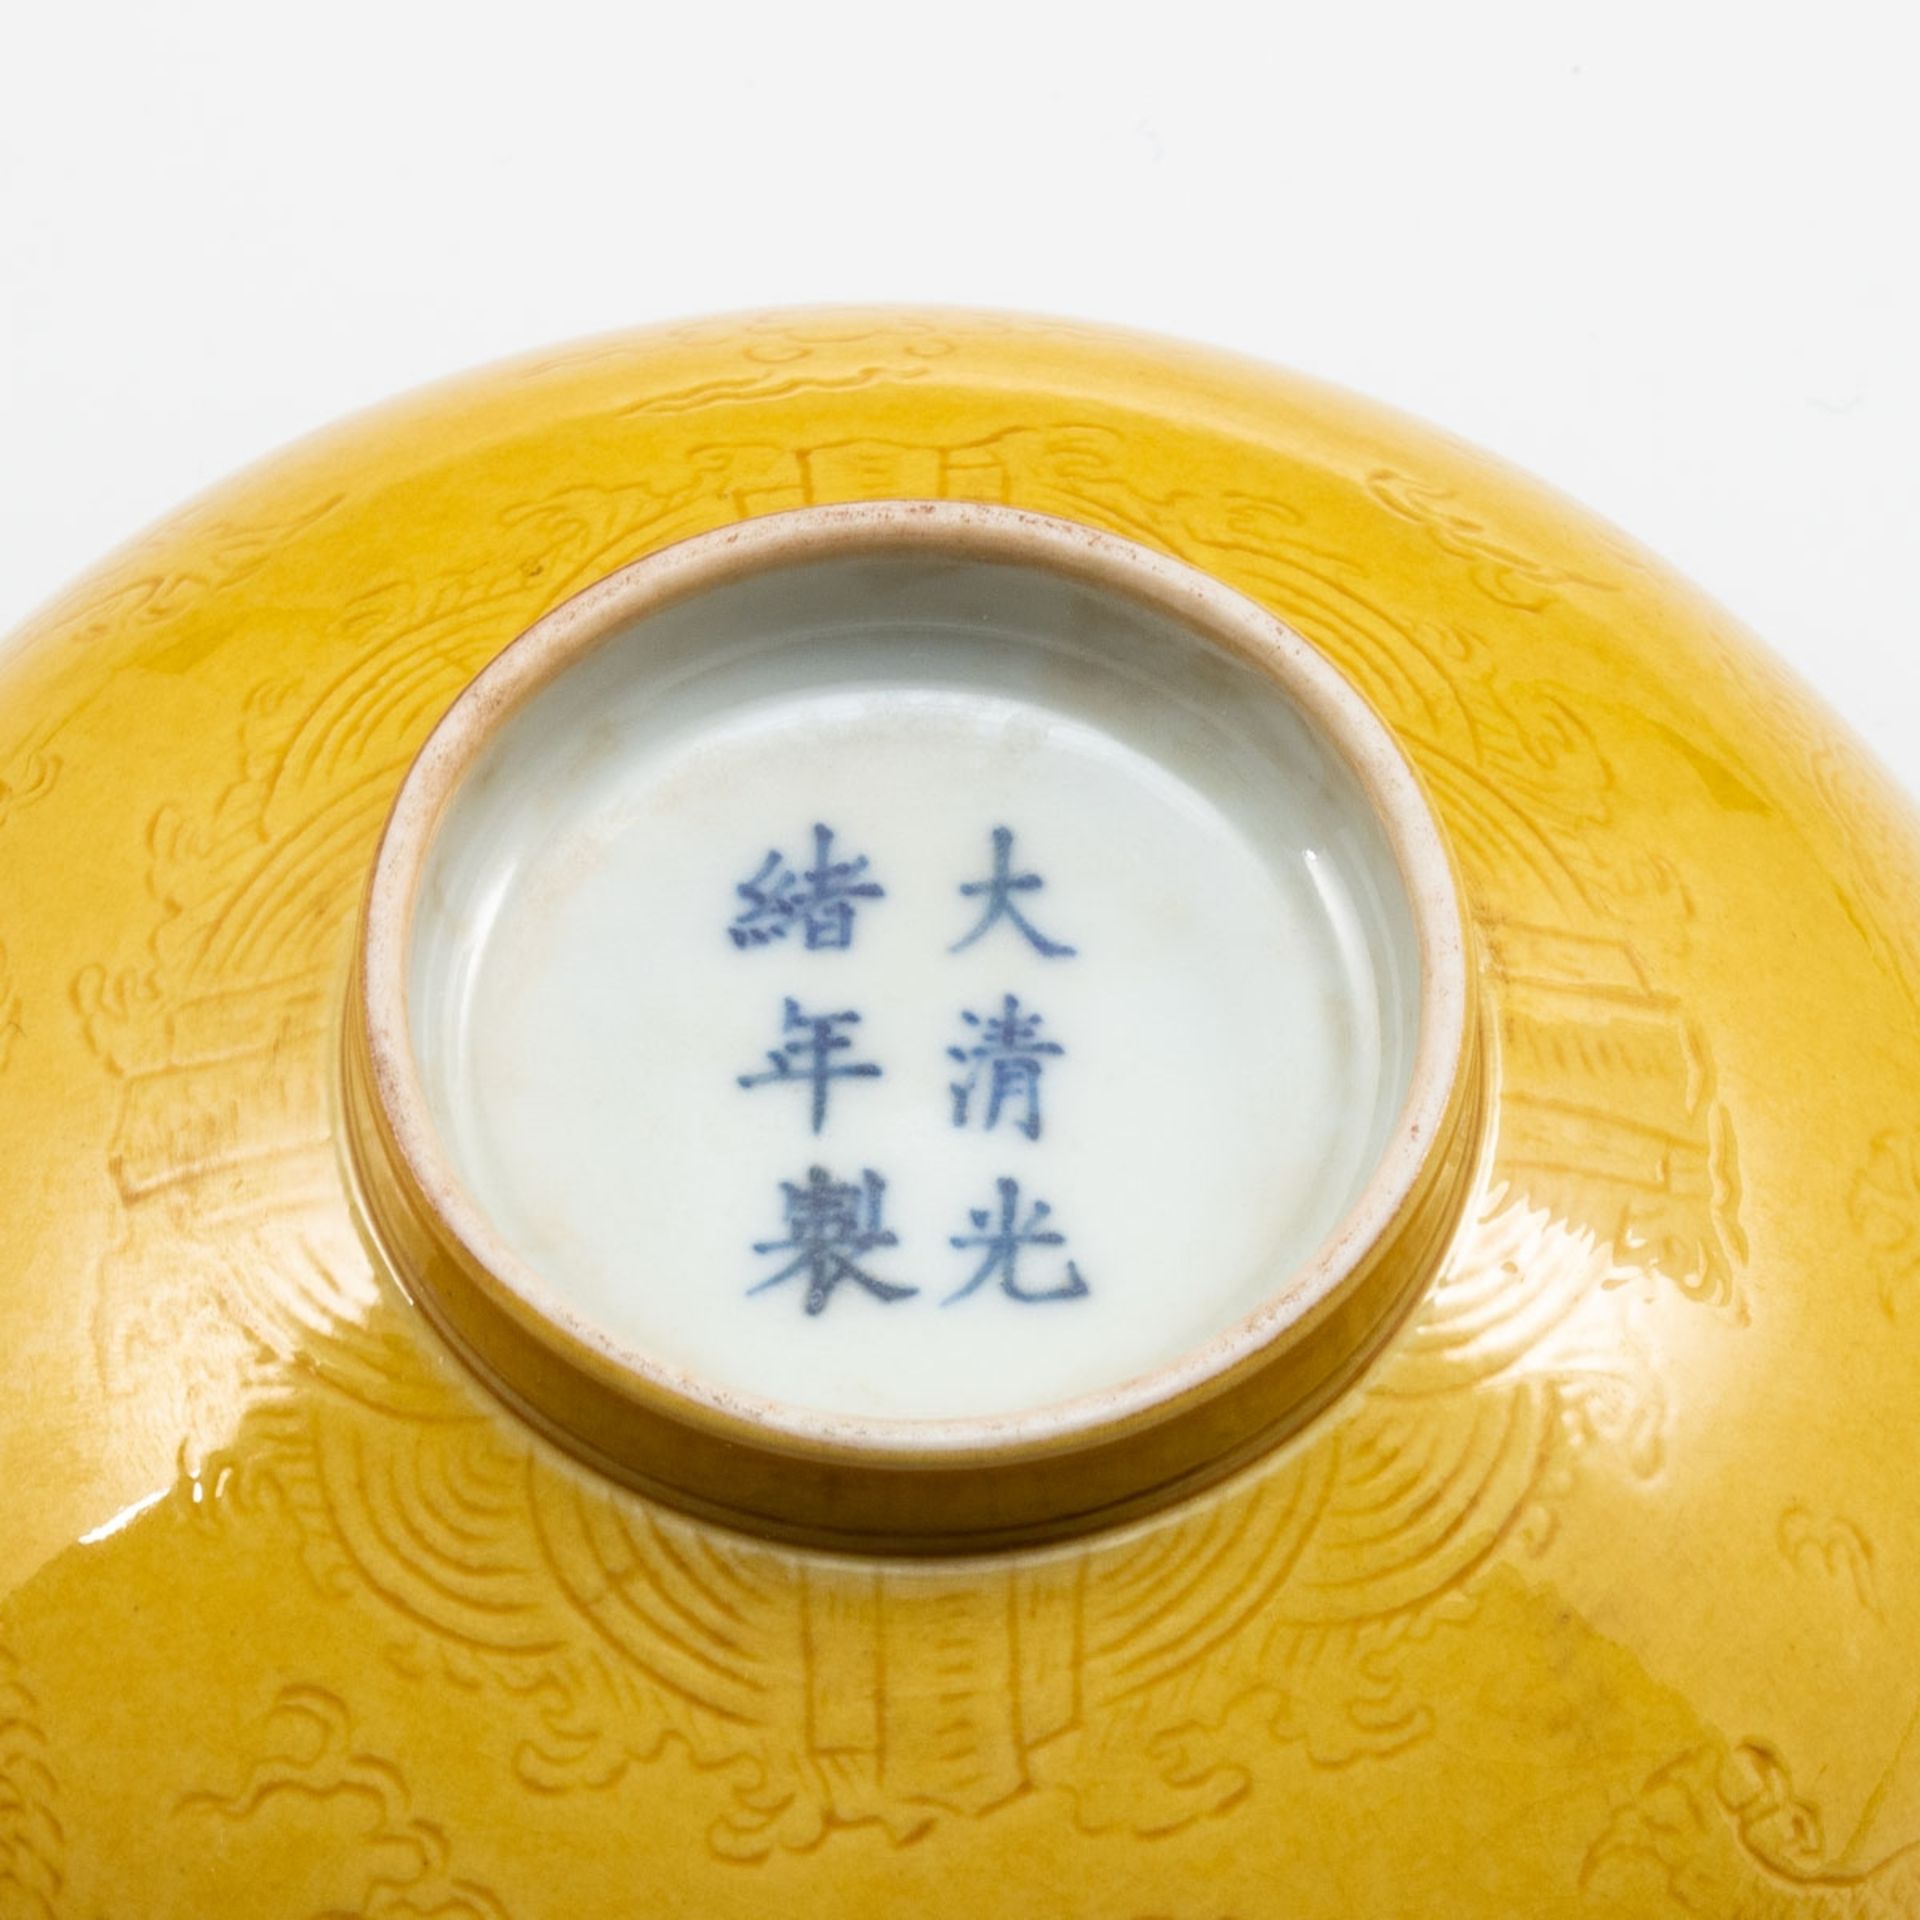 Gelbe Schale, China 20. Jahrhundert, Porzellan - Bild 2 aus 2